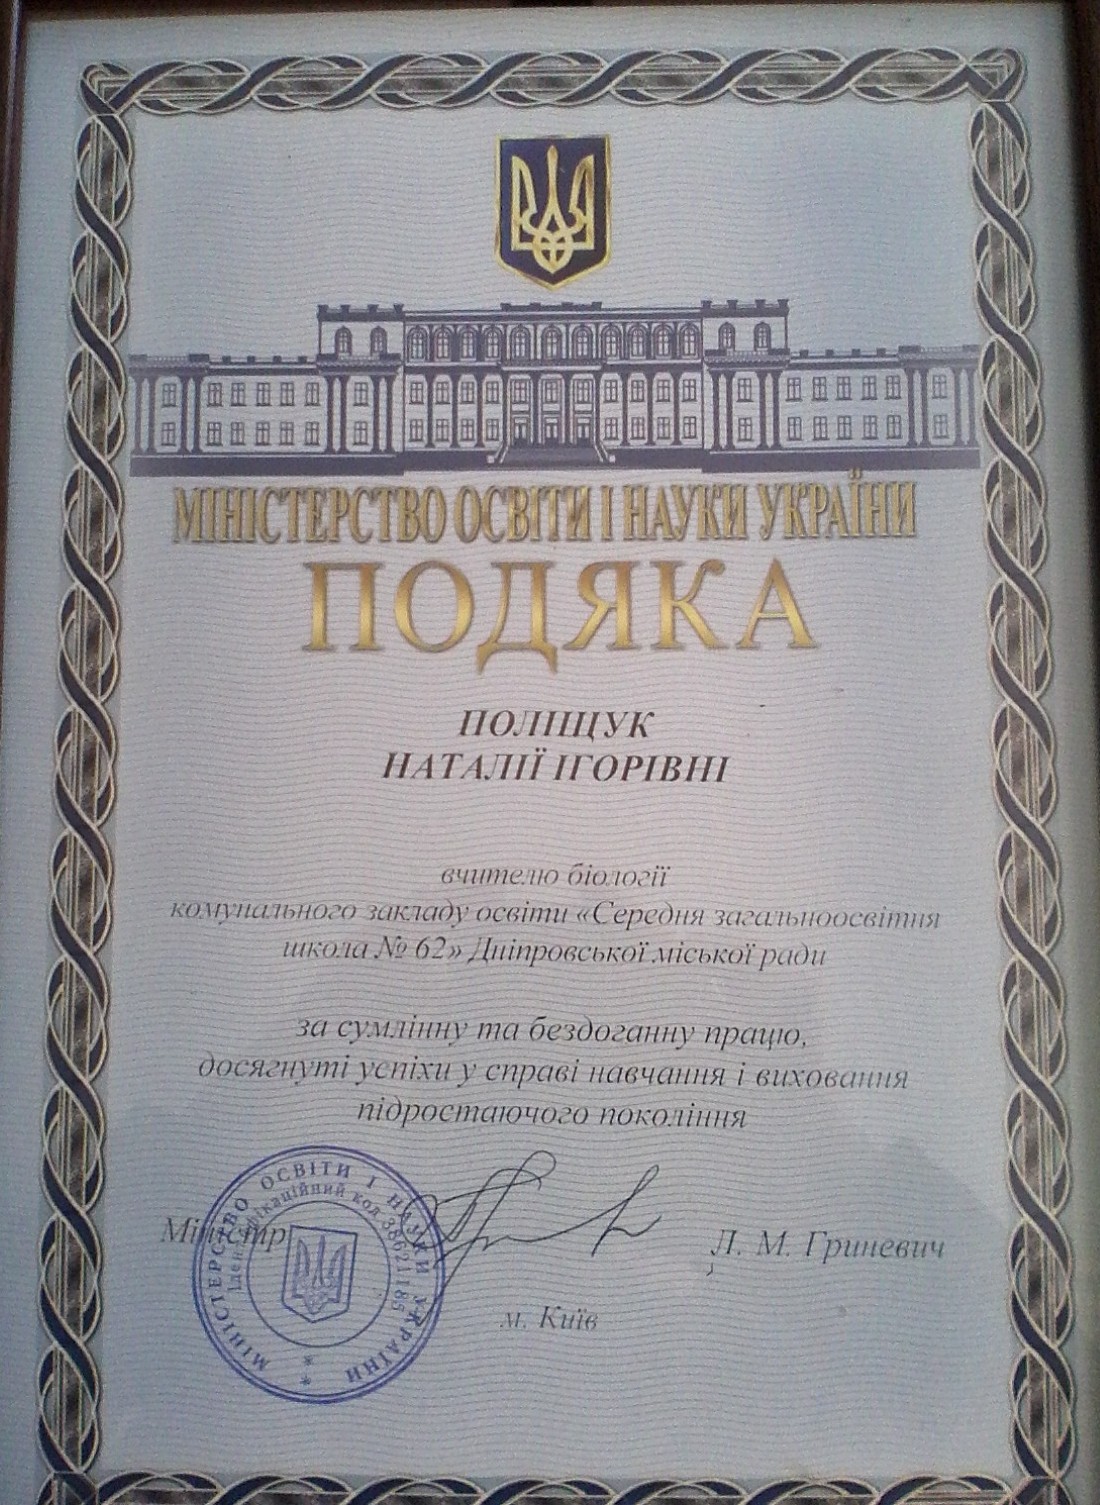 Подяка Міністерства освіти і науки України